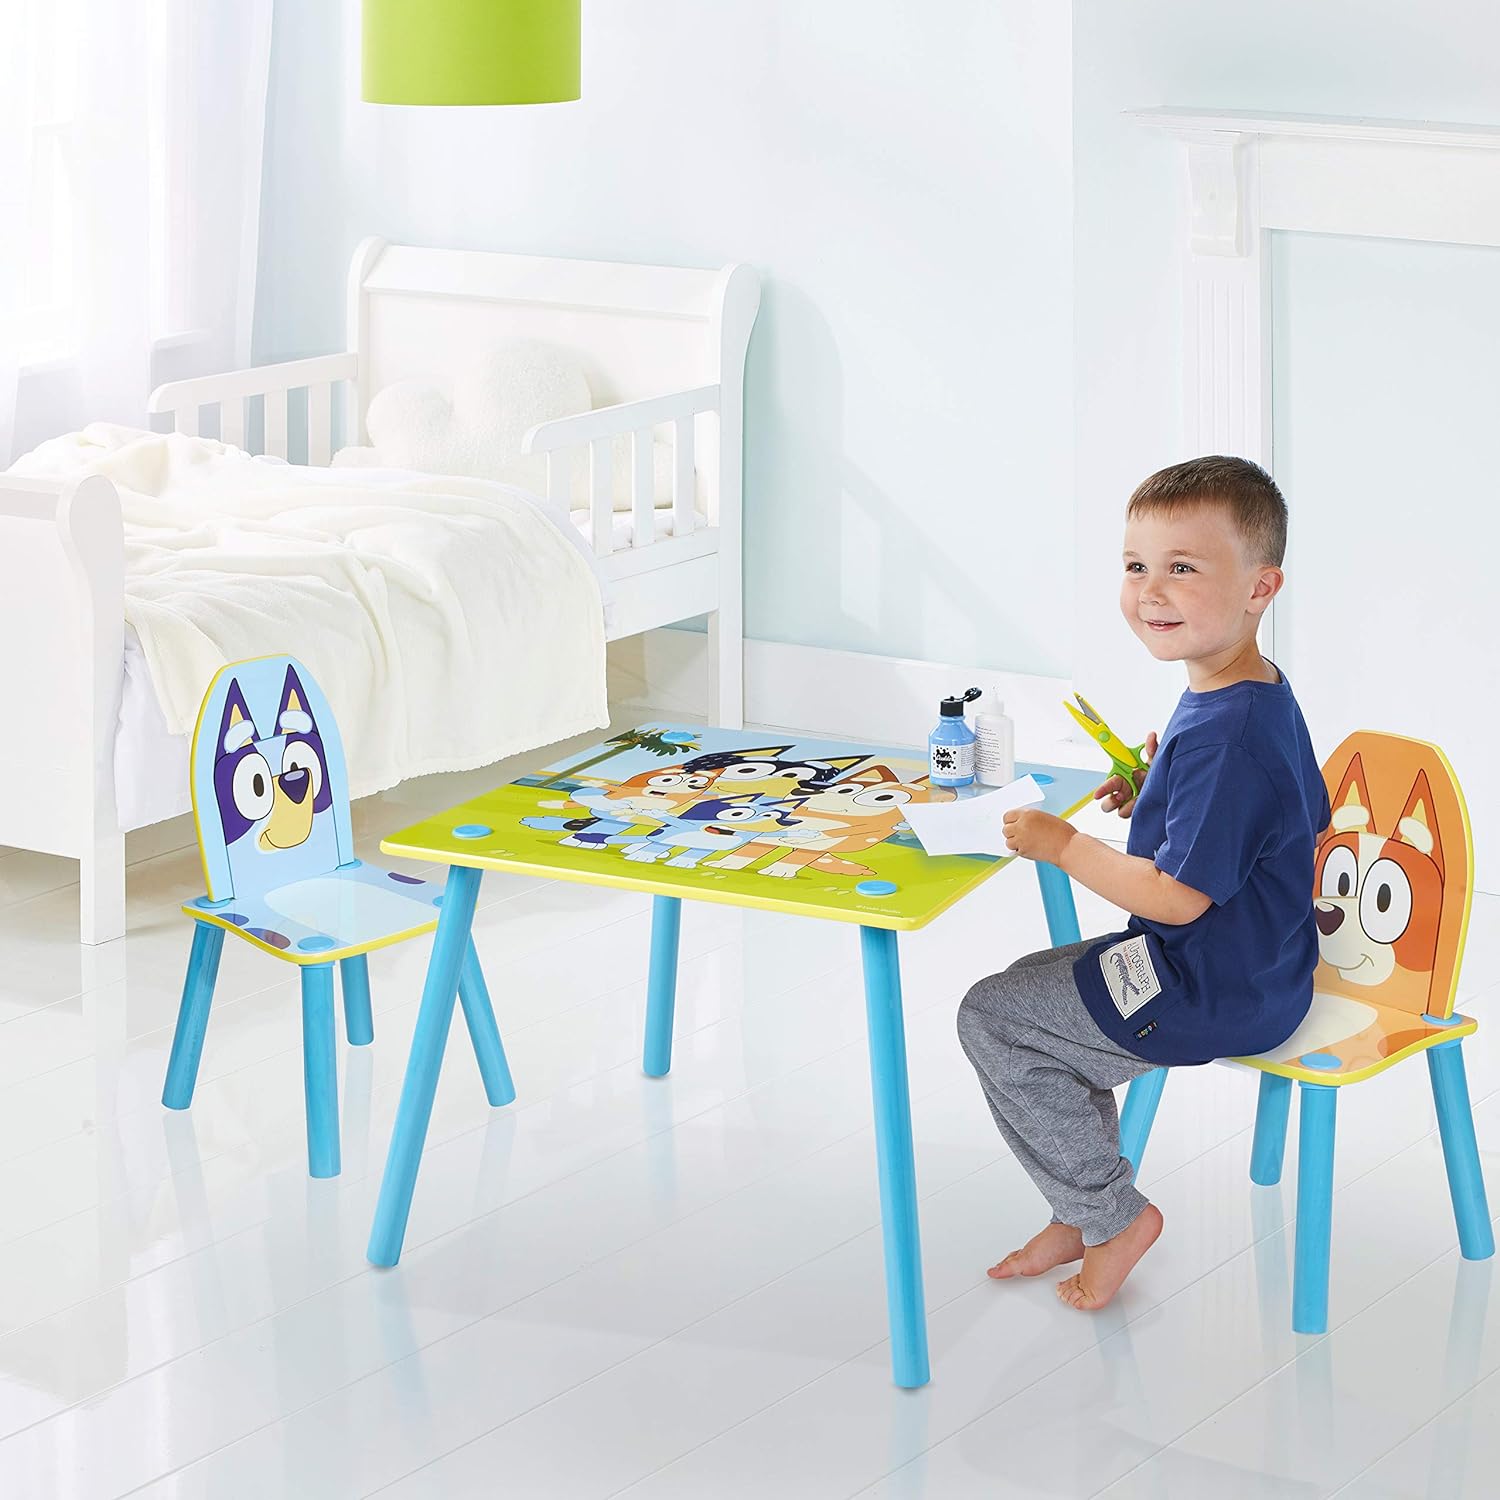 Bluey Muebles Incluye mesa y 2 sillas Perfecto para artes y manualidades,